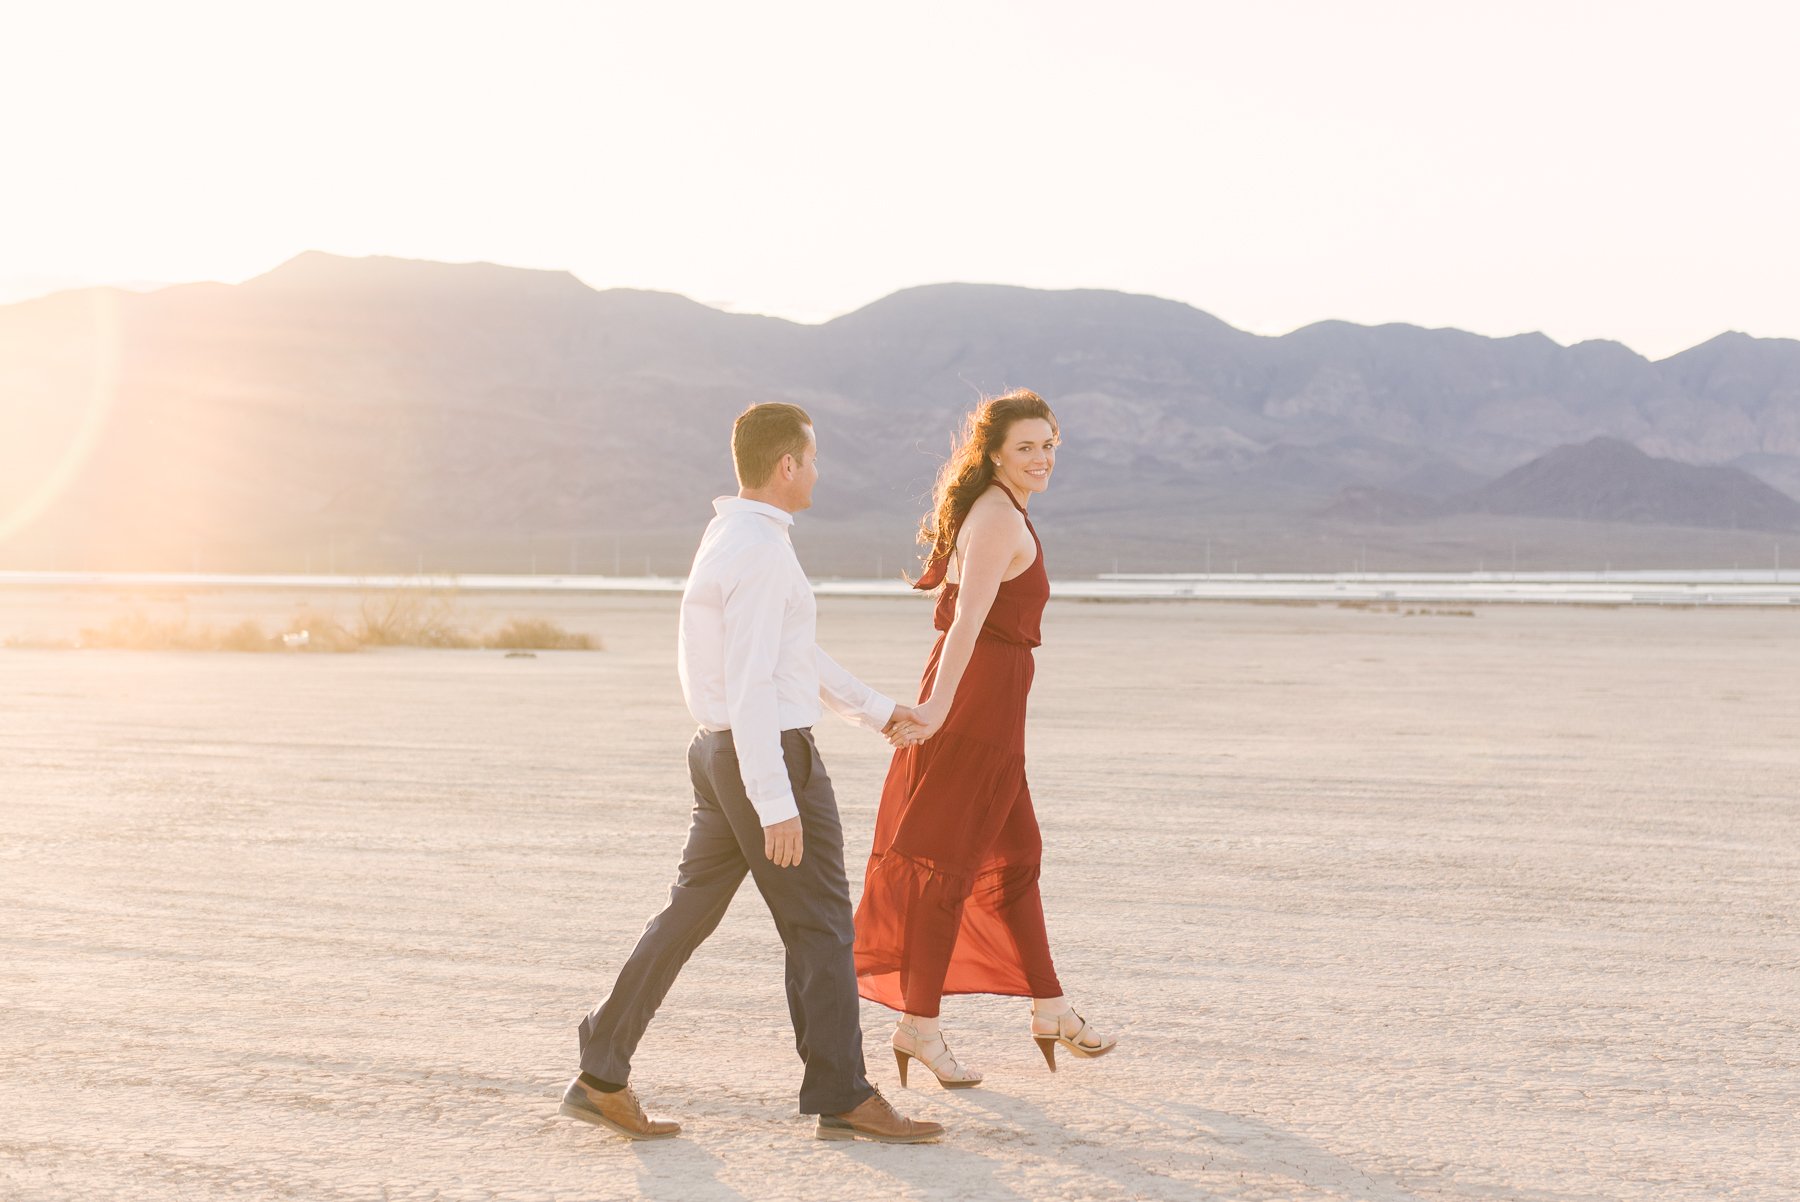 couple walking hand in hand in open desert